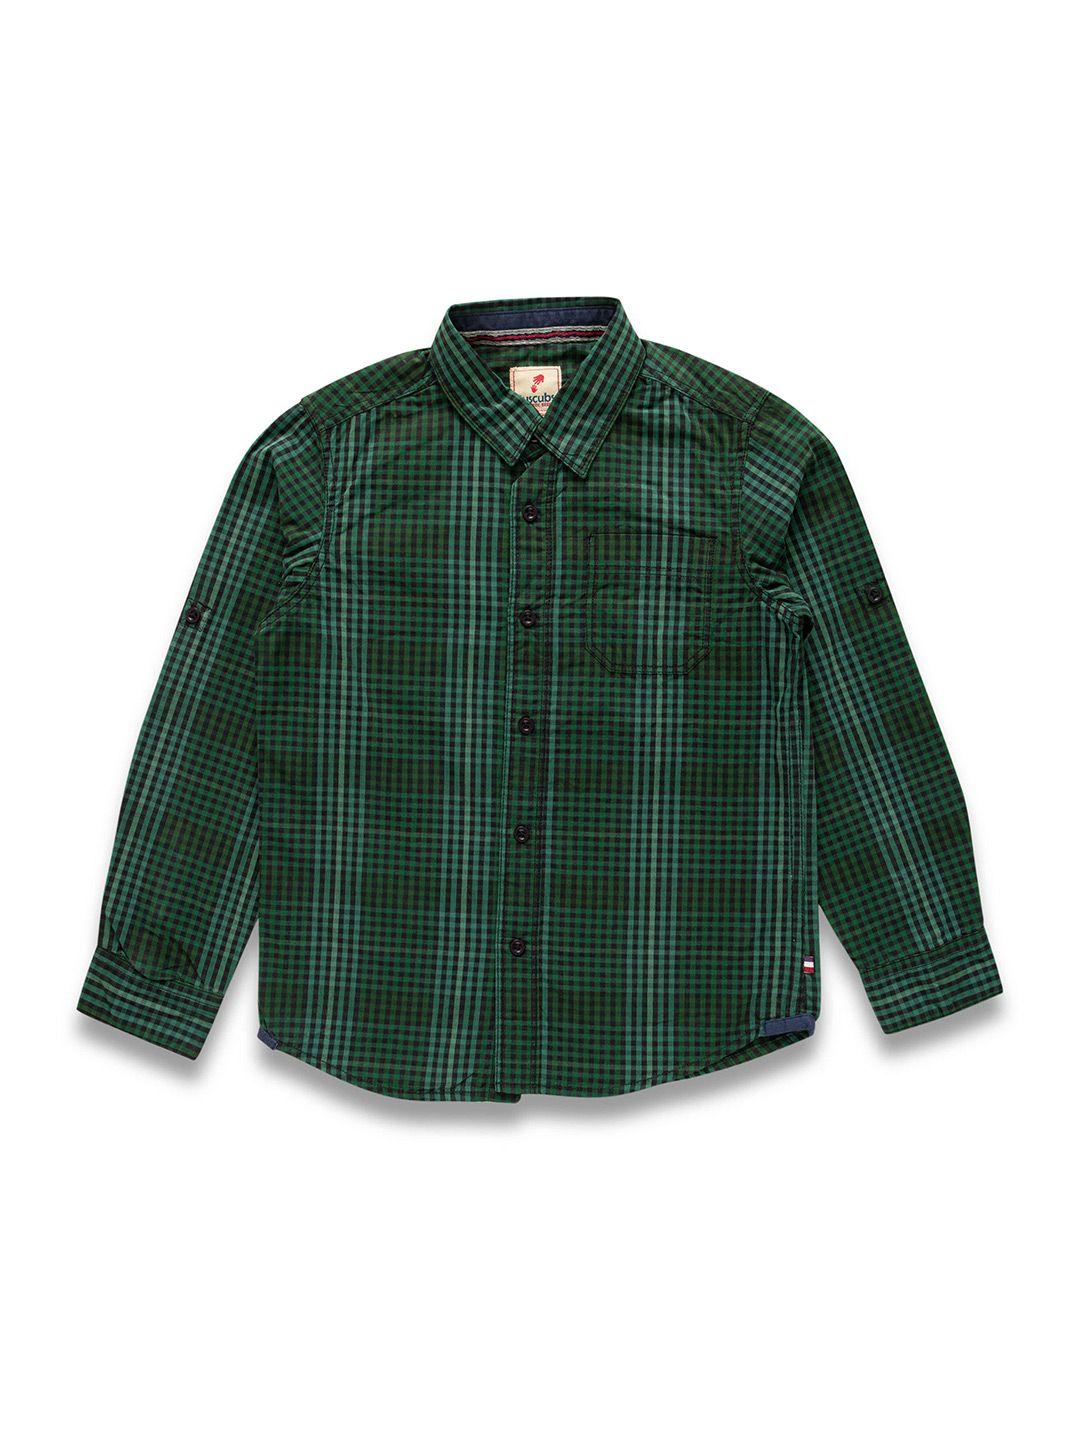 juscubs boys green premium tartan checks opaque checked casual shirt